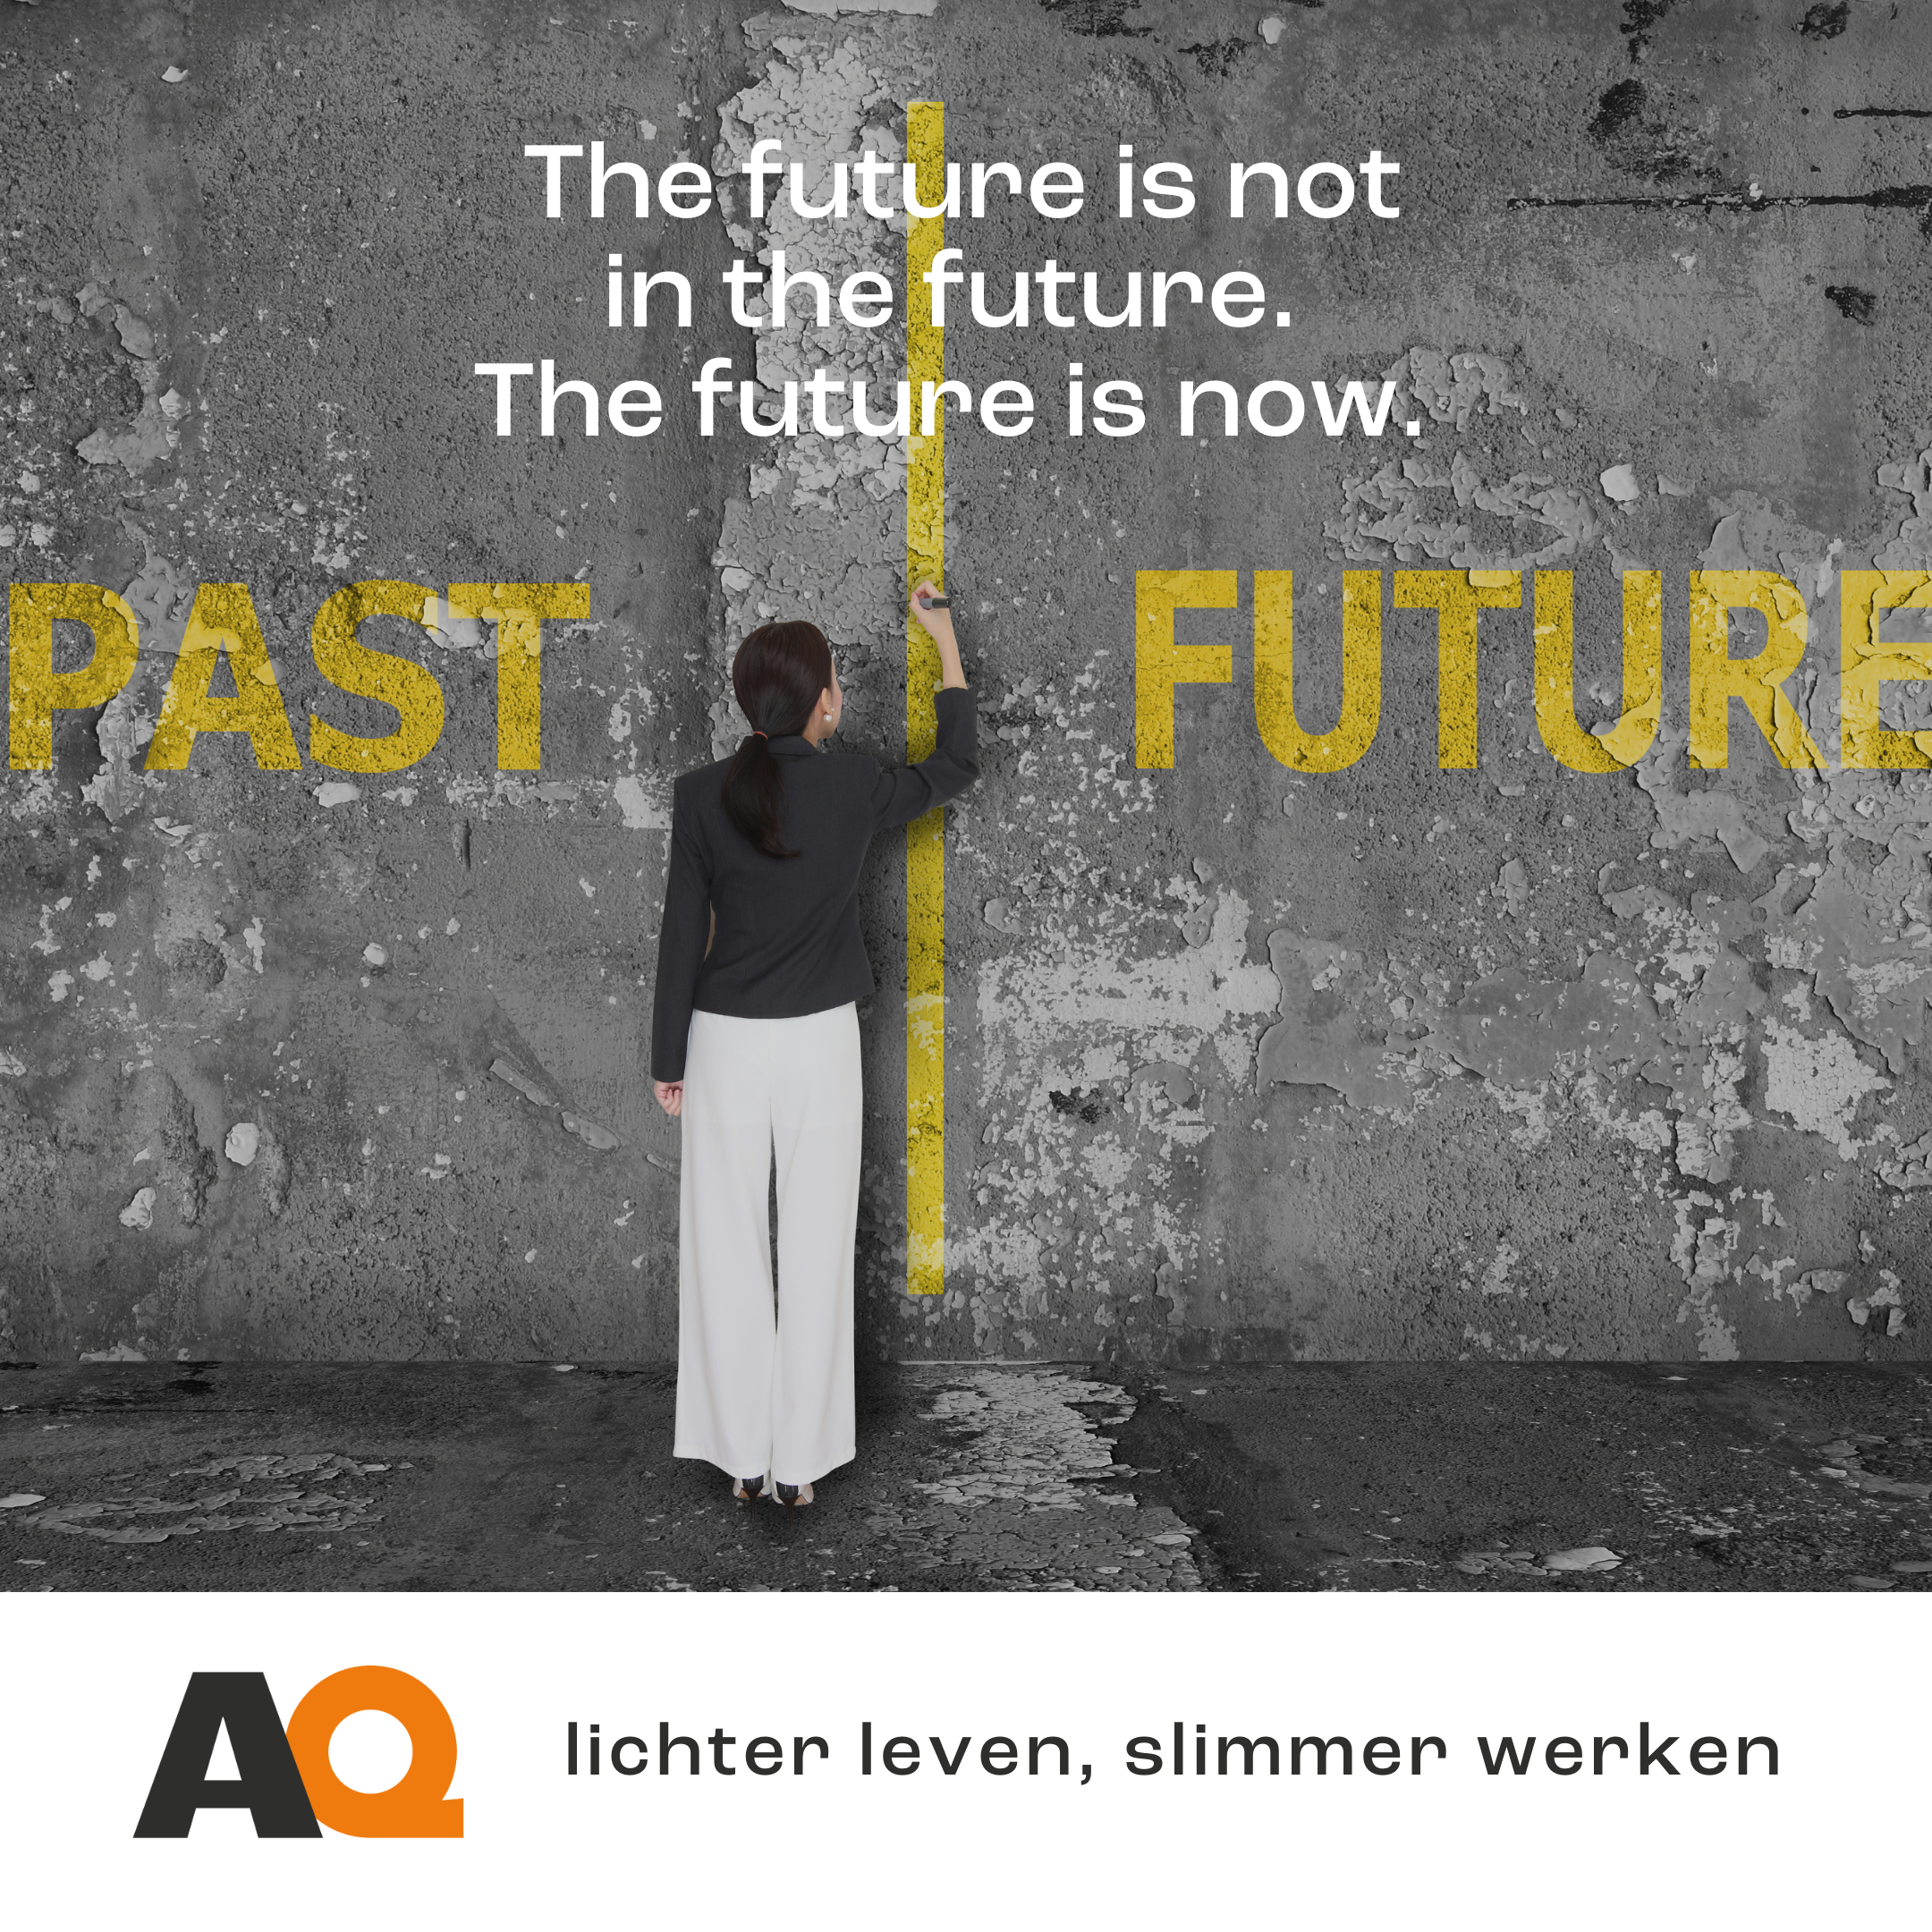 The future is not in the future. The future is now.